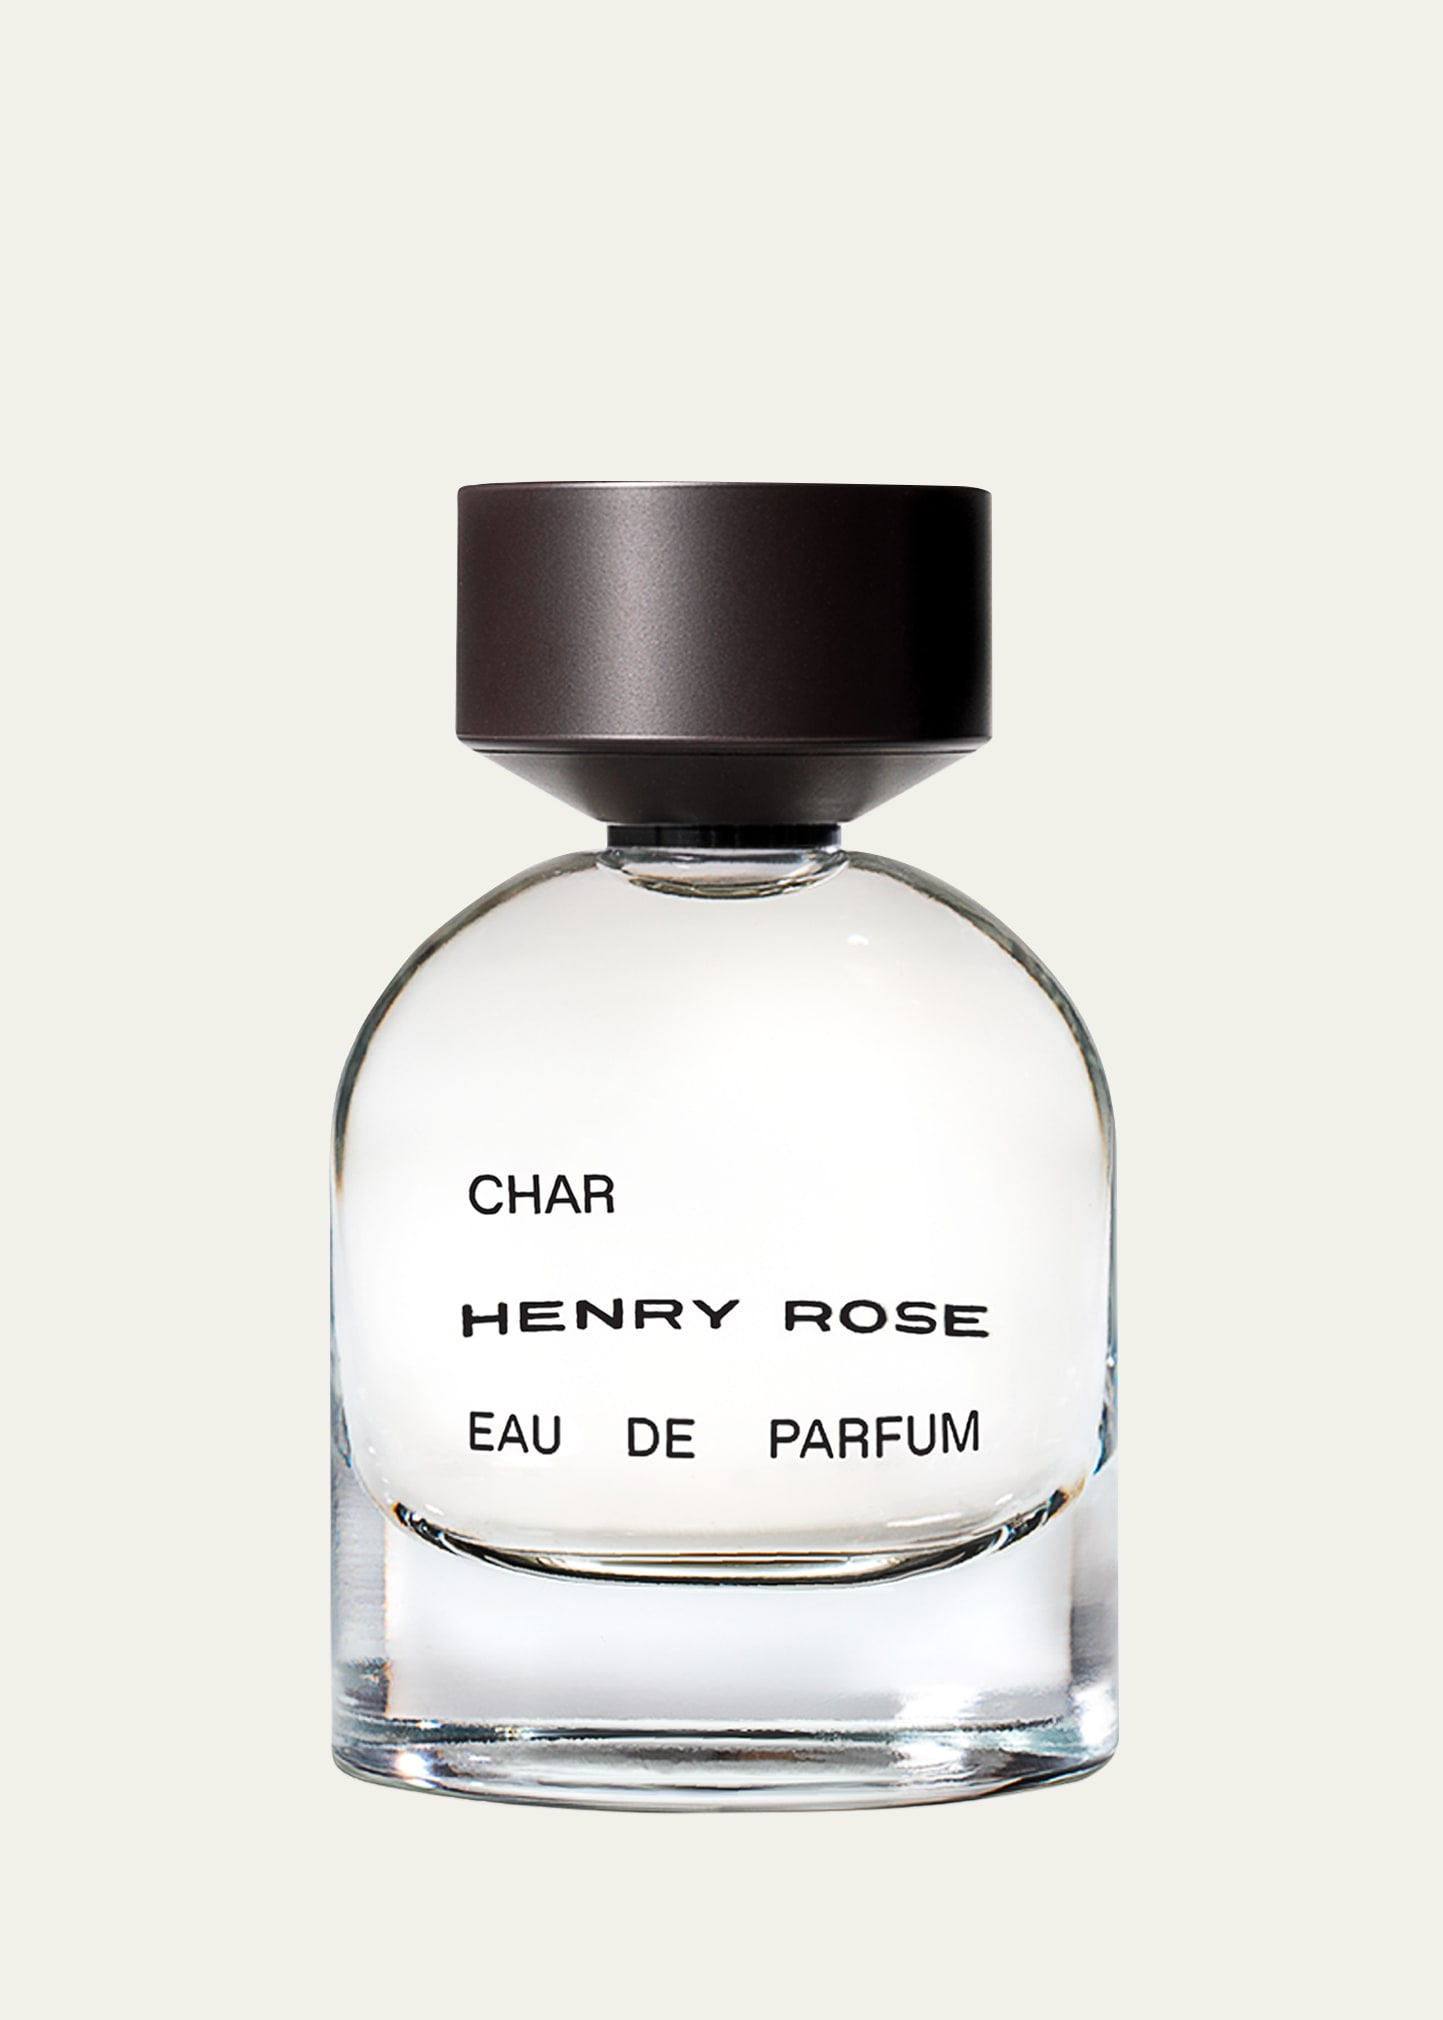 HENRY ROSE Char Eau de Parfum, 1.7 oz.